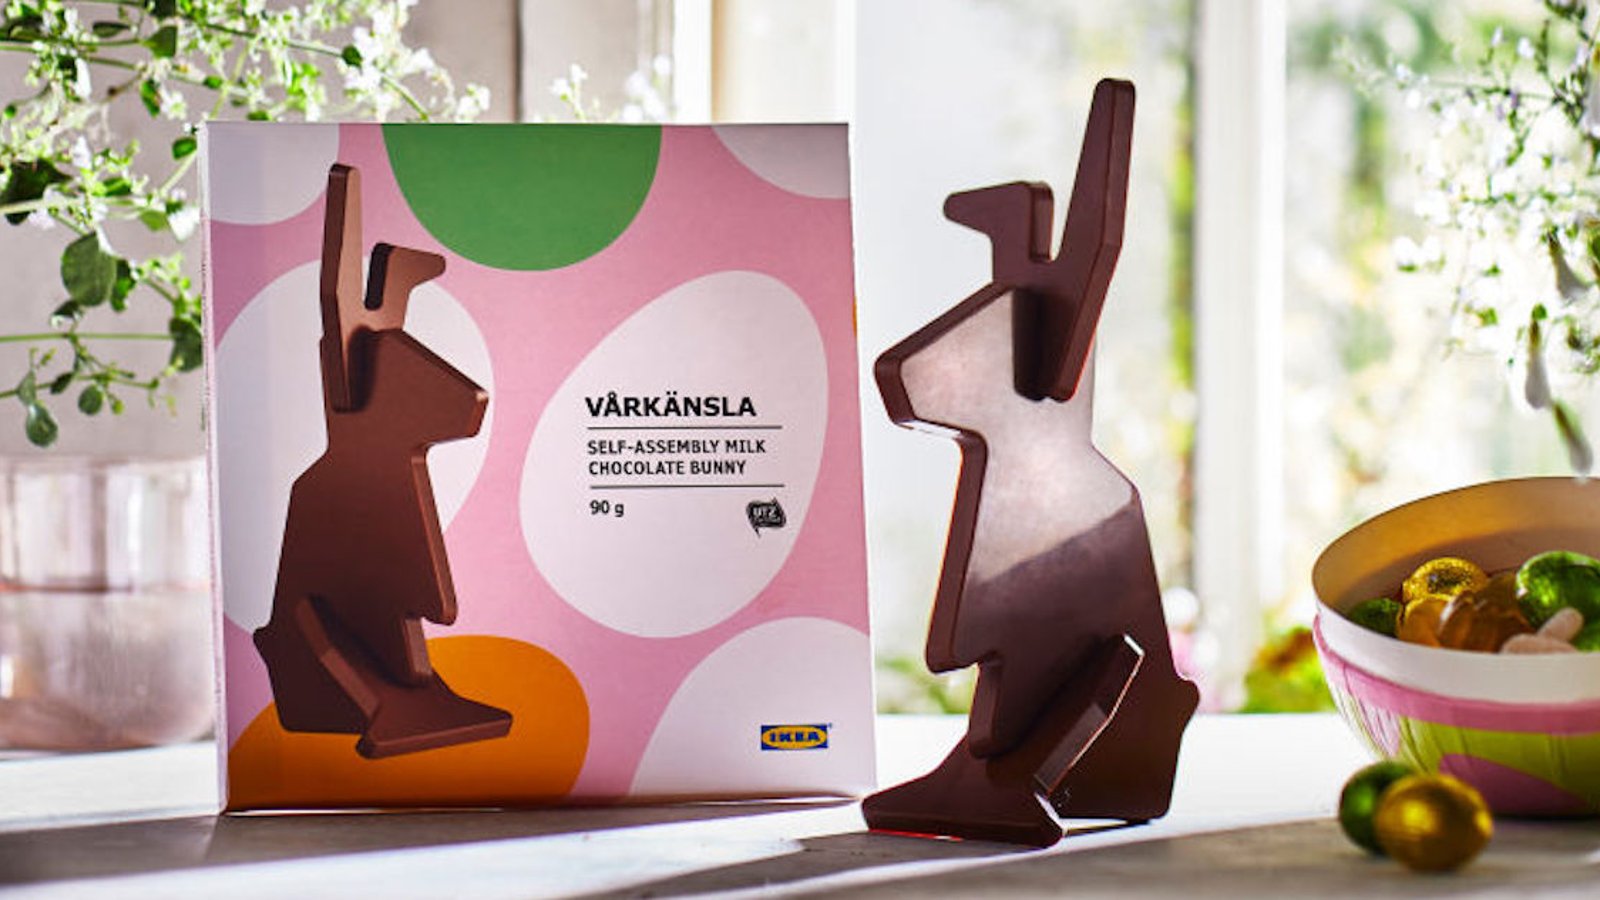 IKEA a créé le lapin en chocolat parfait pour sa gamme